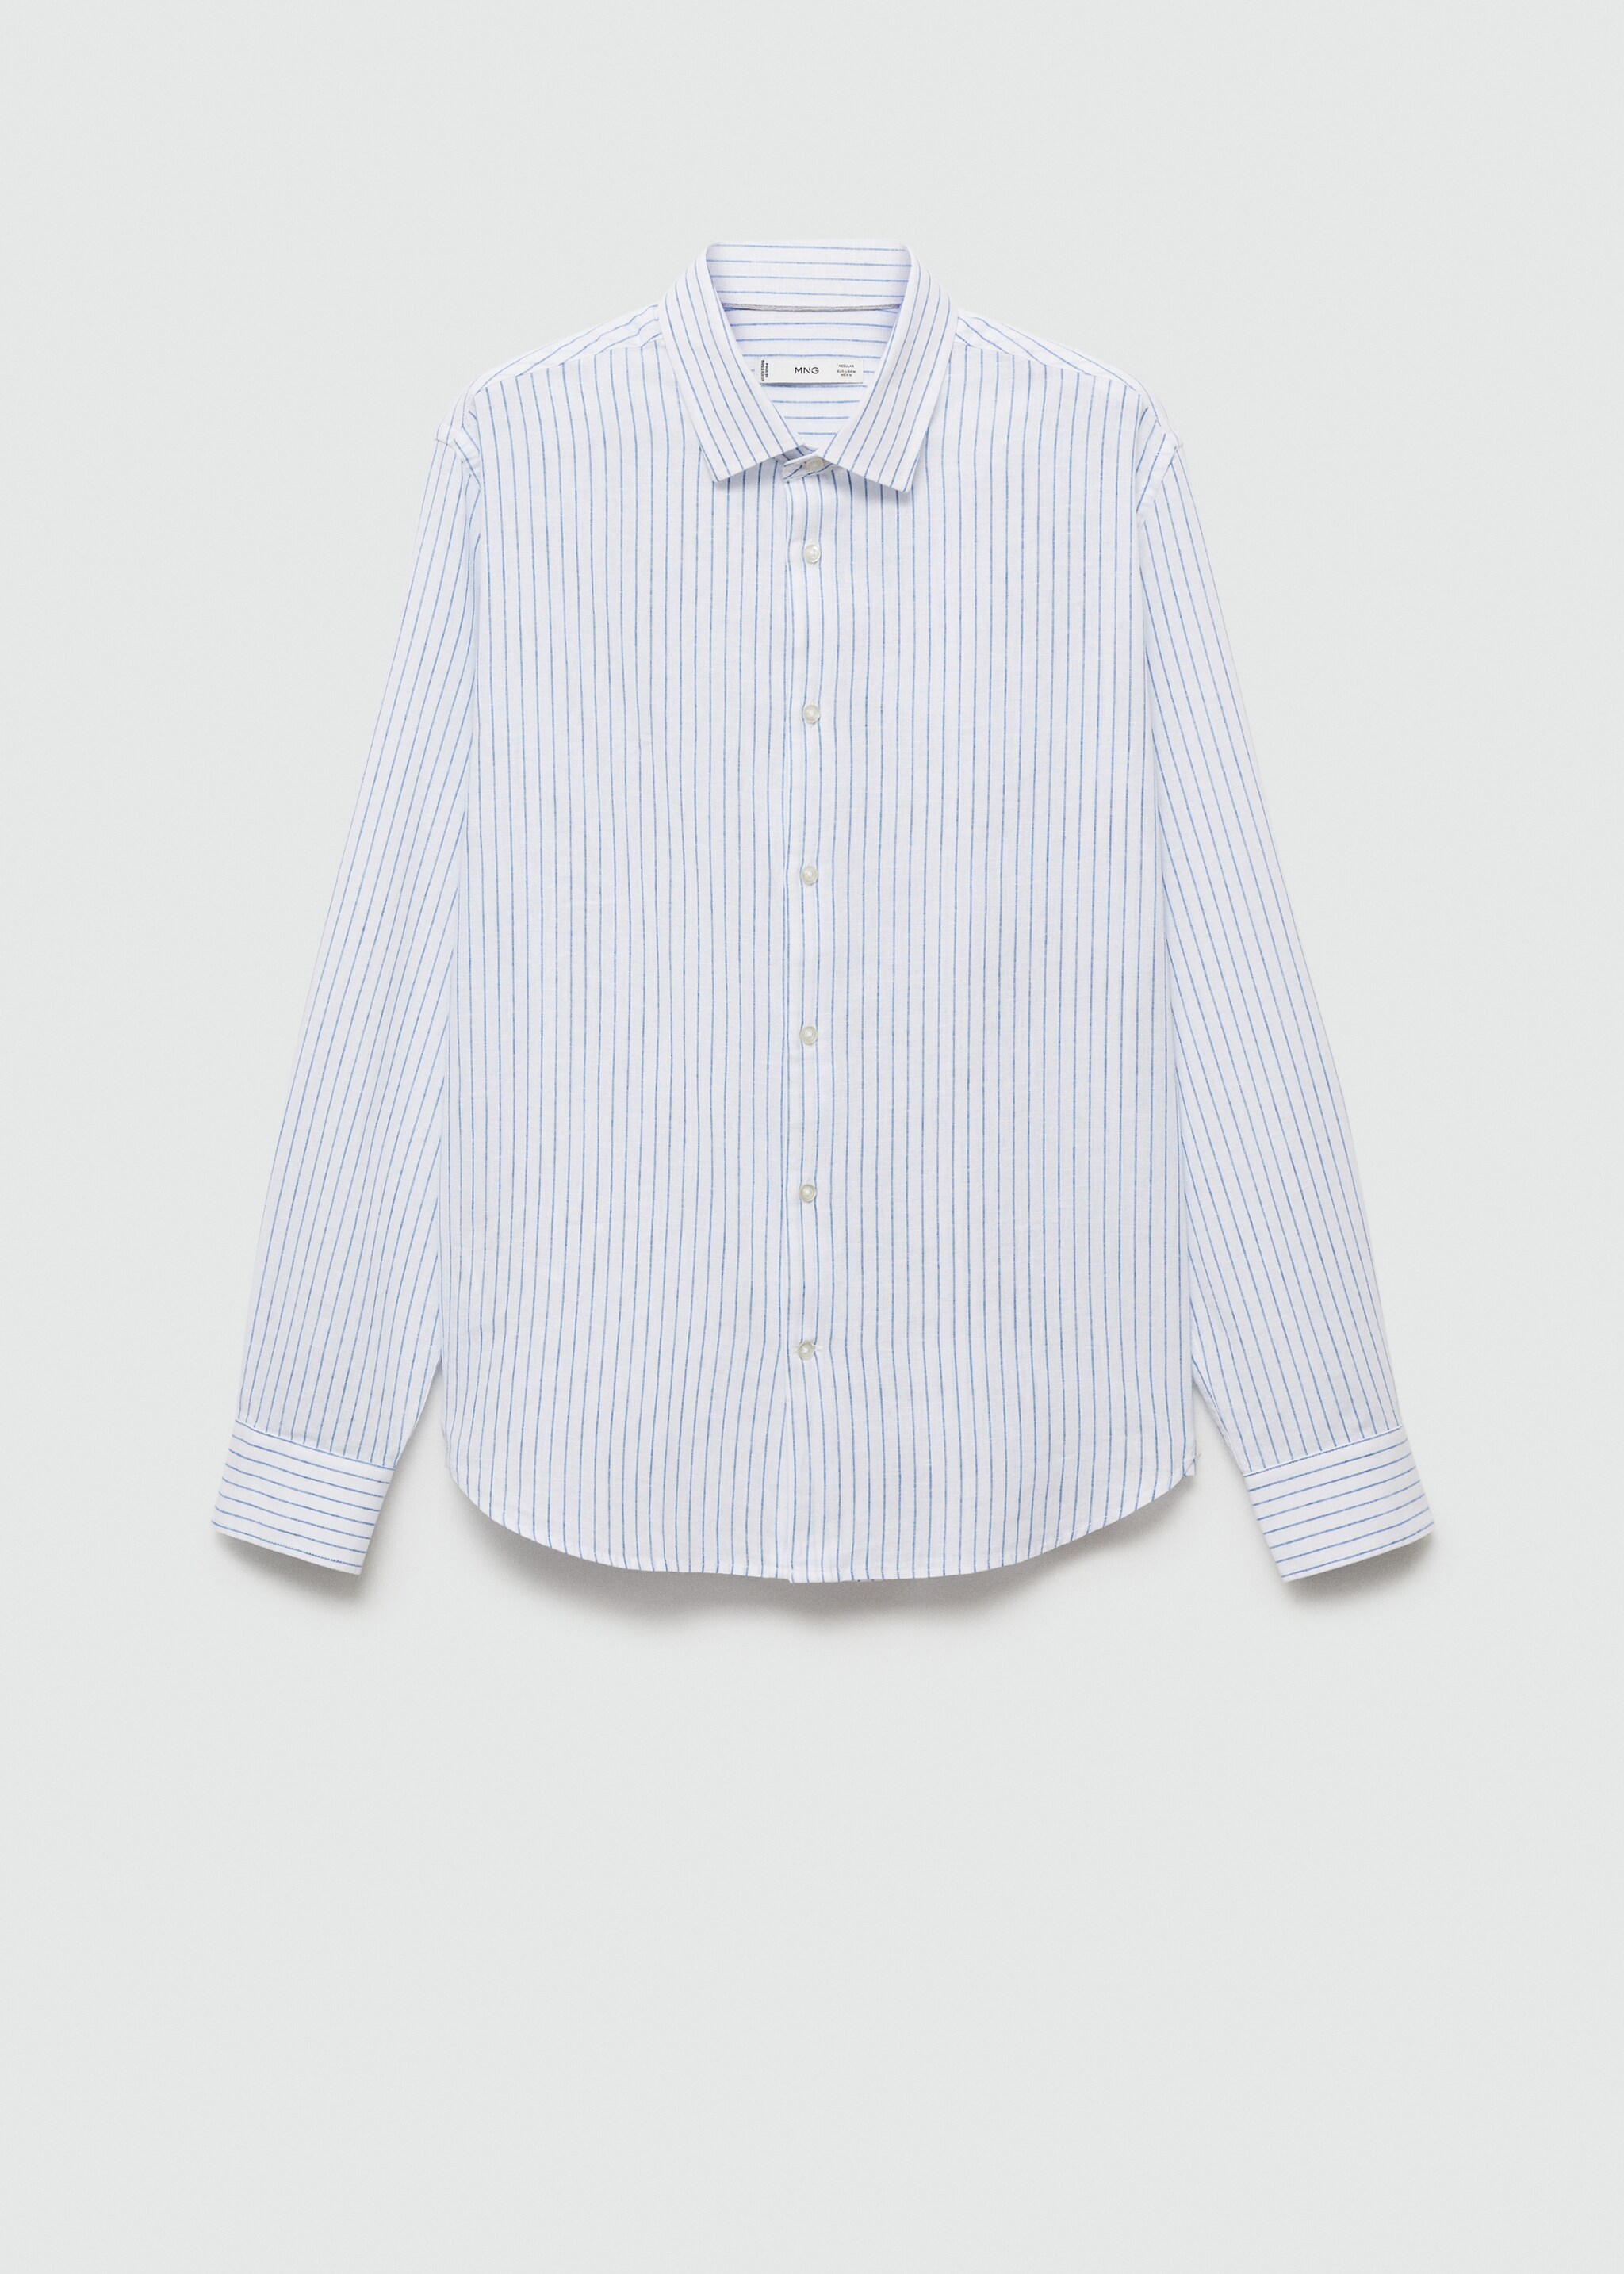 Camisa regular fit lino algodón rayas  - Artículo sin modelo